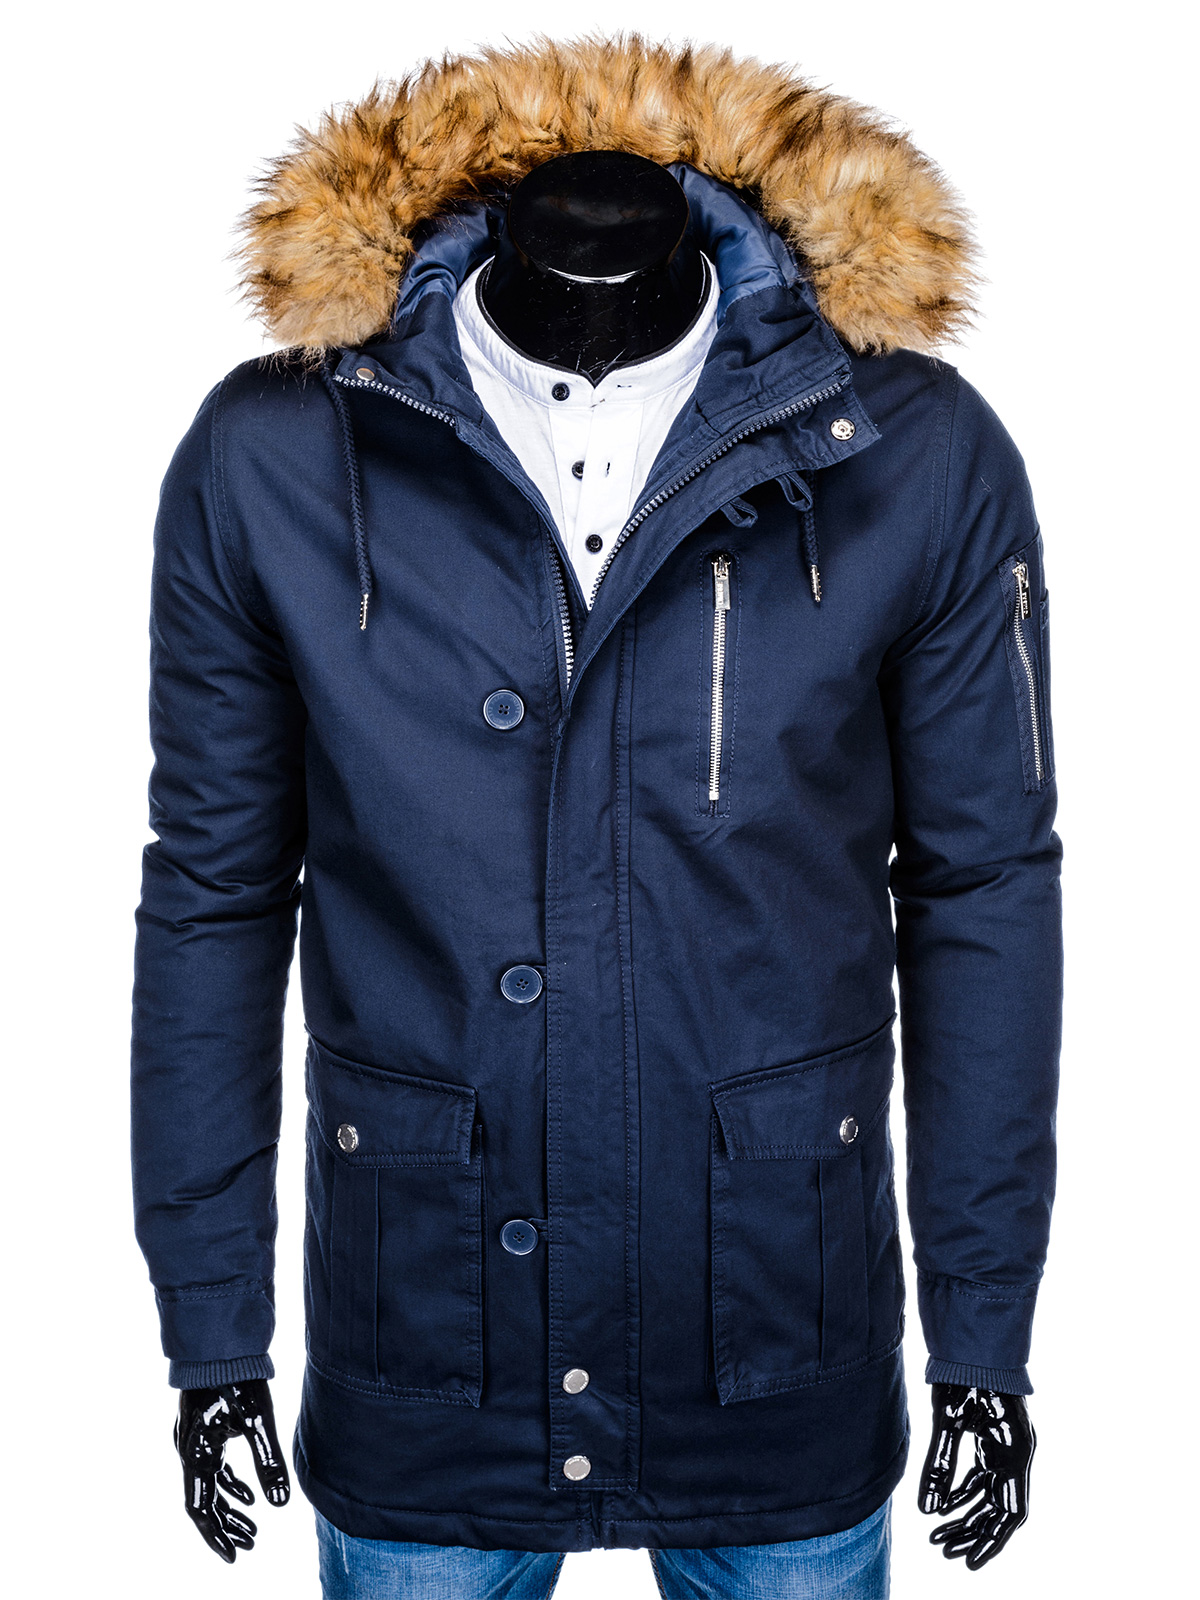 Куртки мужские зимние синие. Куртка Northland синяя зимняя мужская. Куртка парка мужская. Куртка парка мужская зимняя. Пуховик парка мужской.